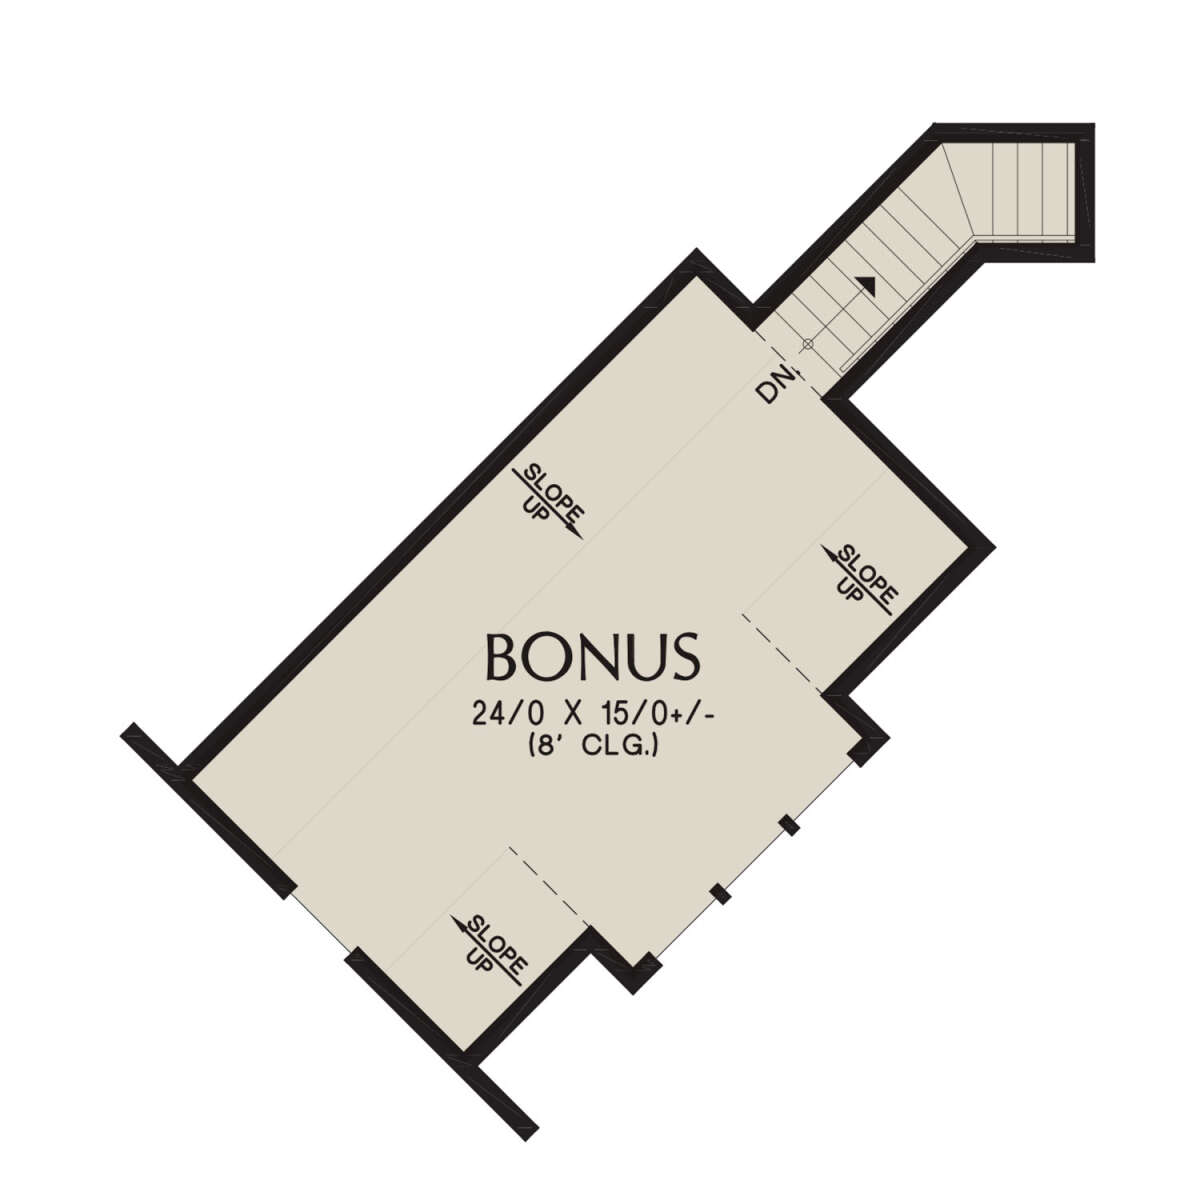 Bonus Room for House Plan #2559-00957